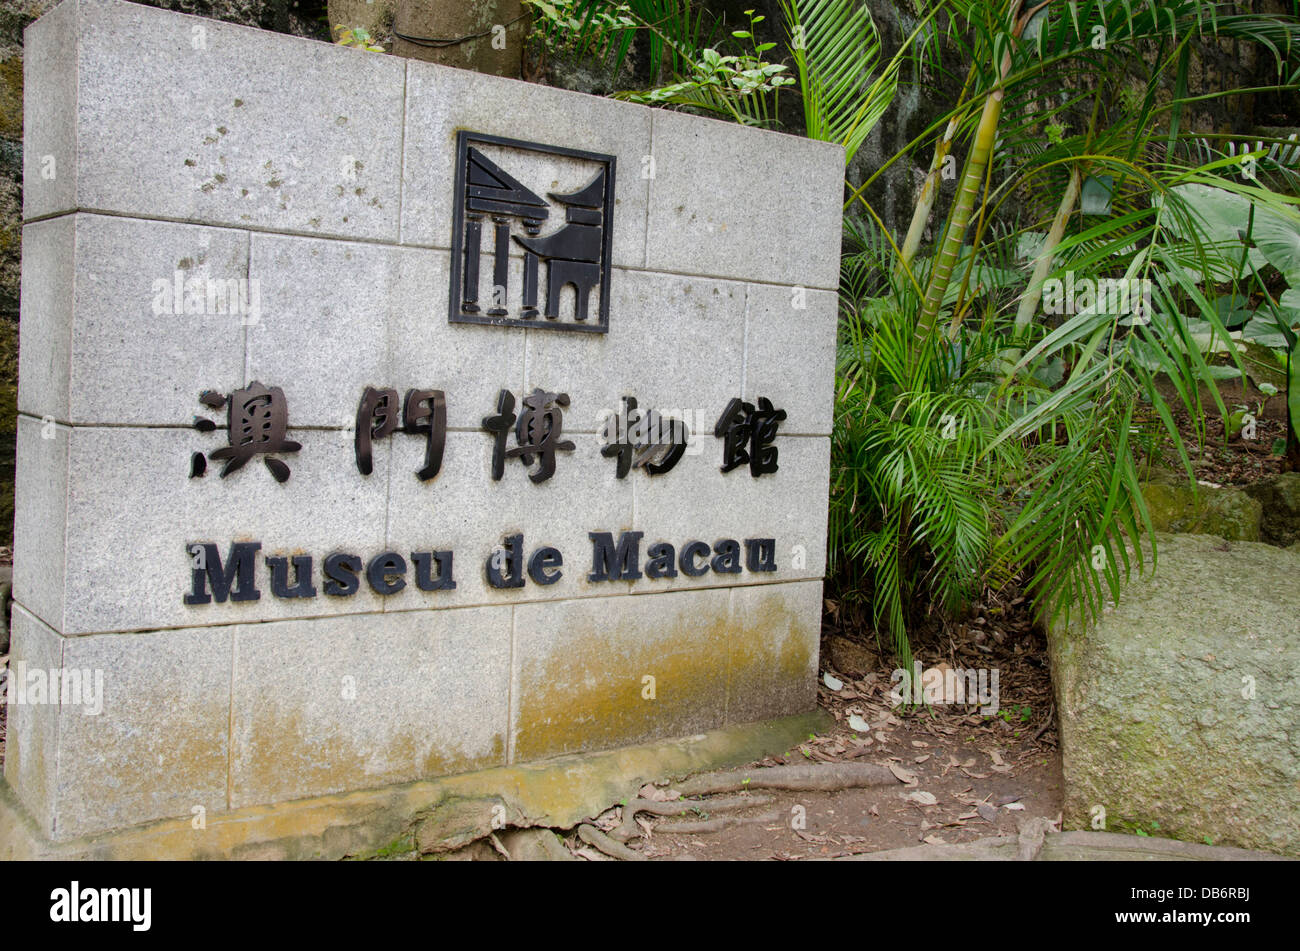 China, Macao. Centro histórico de Macao, la UNESCO. El museo de Macao (aka Museu de Macao) firmar. Foto de stock